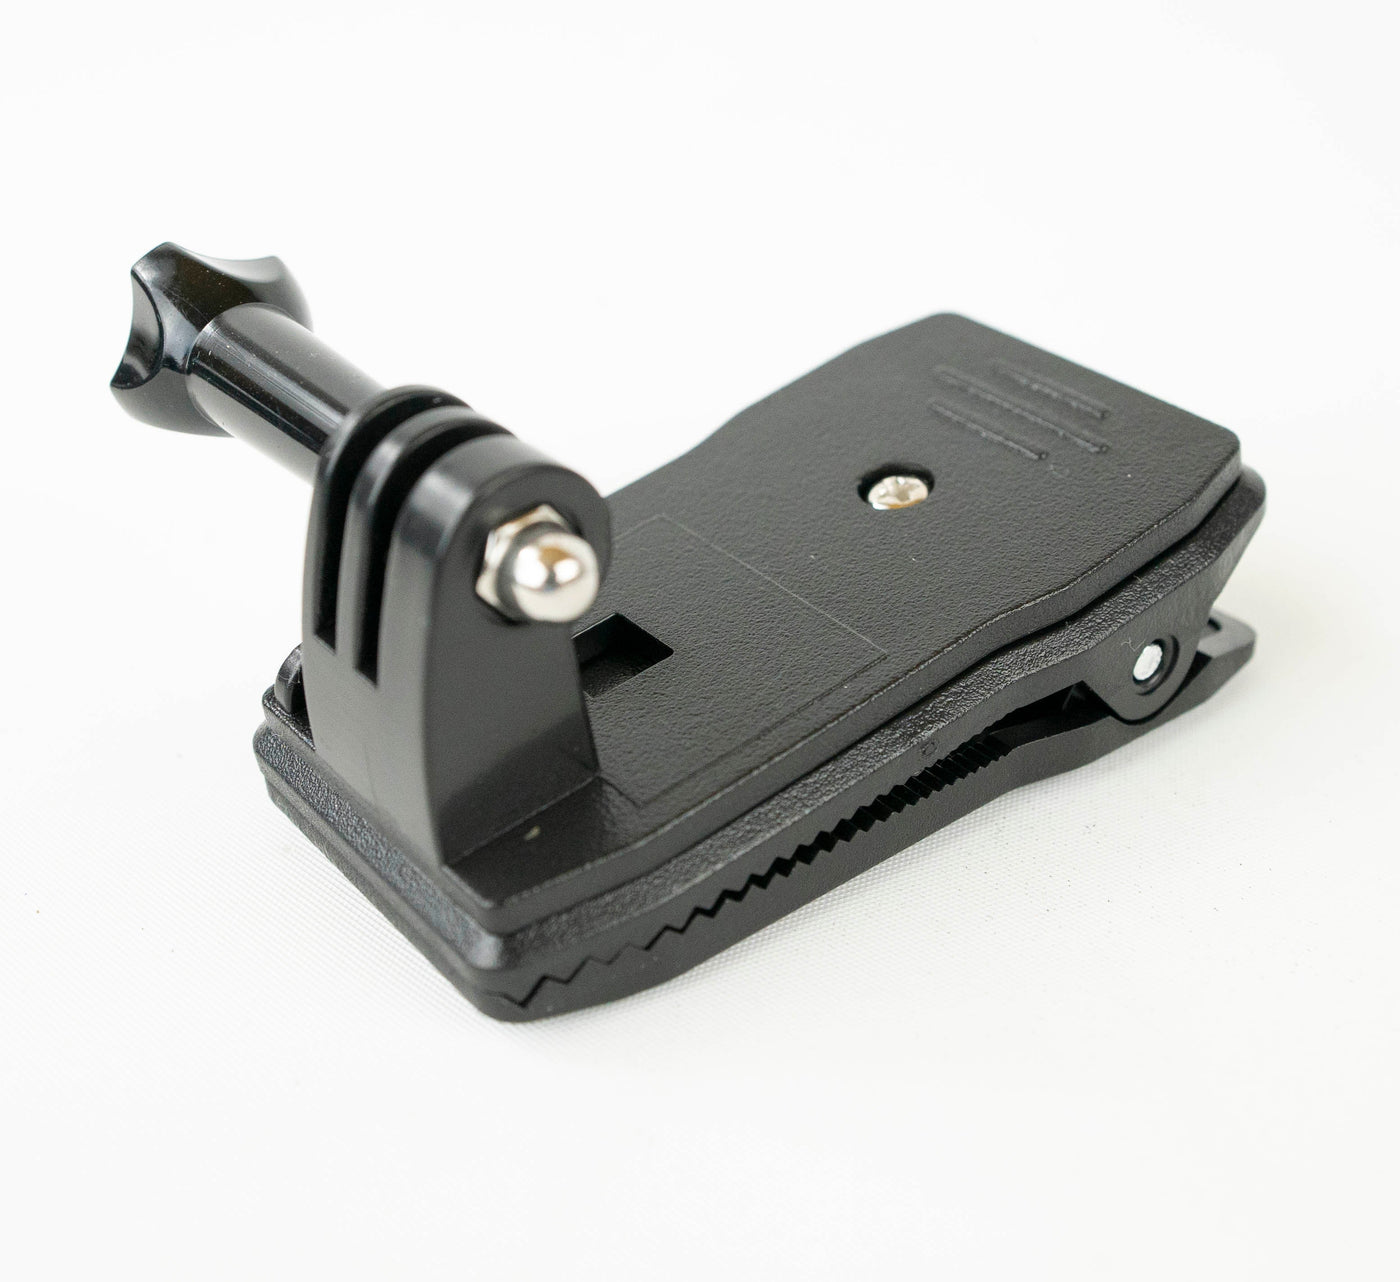 Attachment Kit - Pro - Small Cams - EU